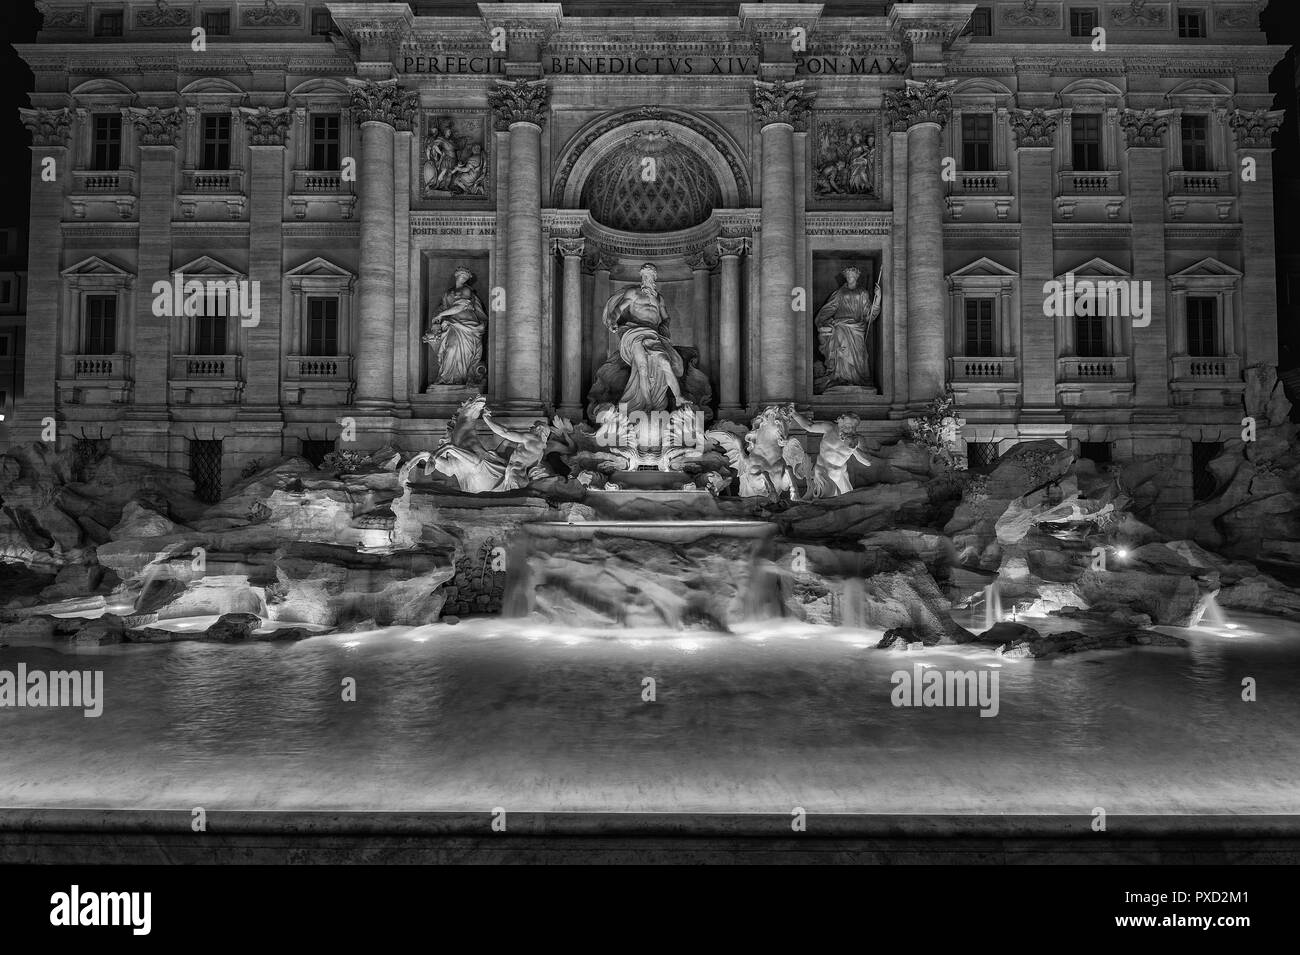 Schönen Trevi Brunnen bei Nacht, mit Ozean Gott und tritonen Statuen, im 18. Jh. im historischen Zentrum von Rom (Schwarz und Weiß) Stockfoto